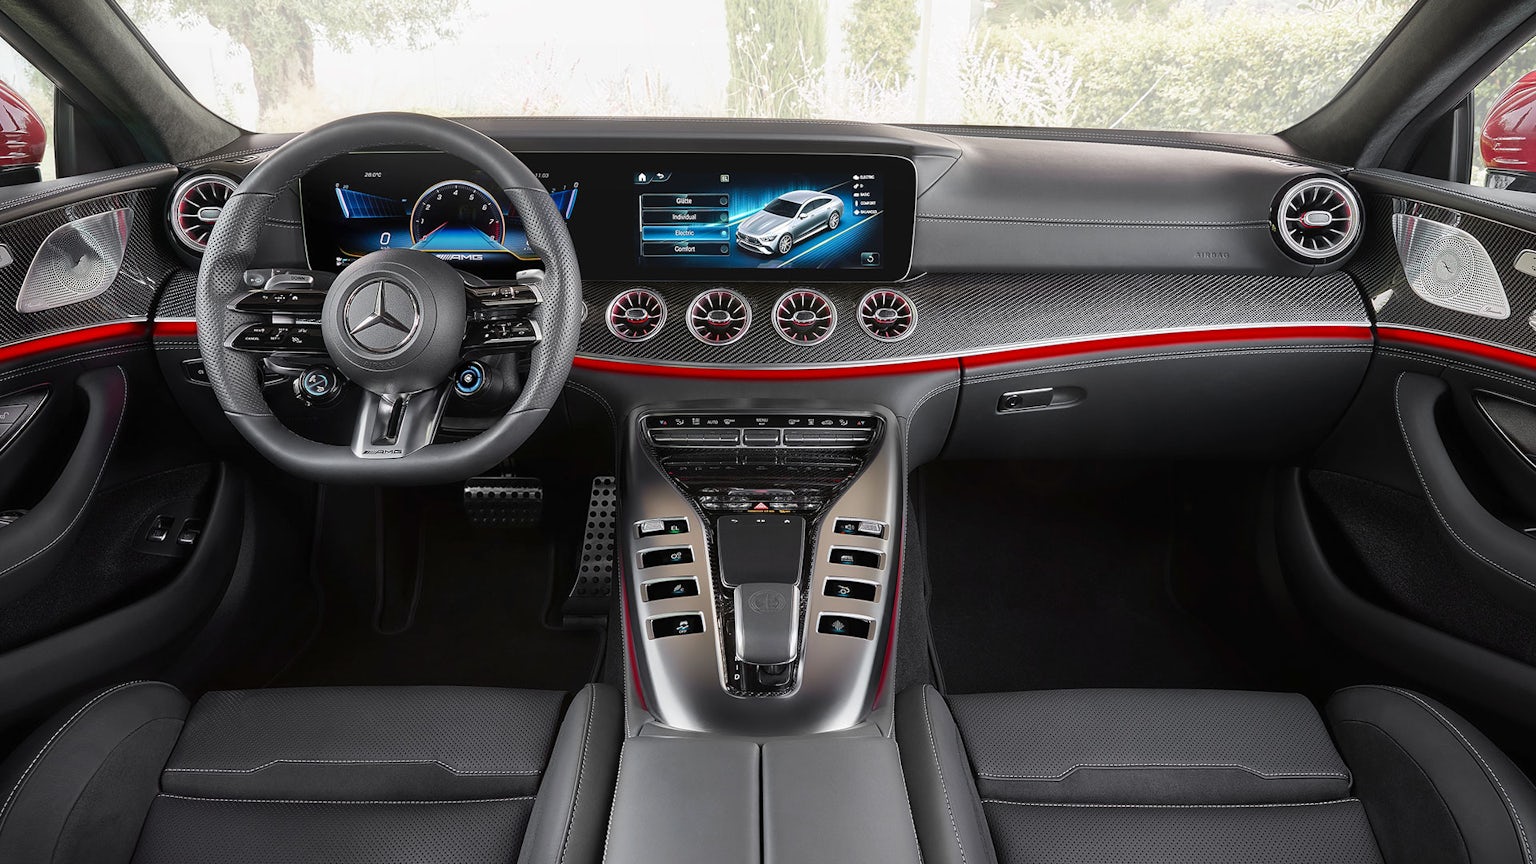 New 843hp MercedesAMG GT 63 S E Performance hybrid revealed price